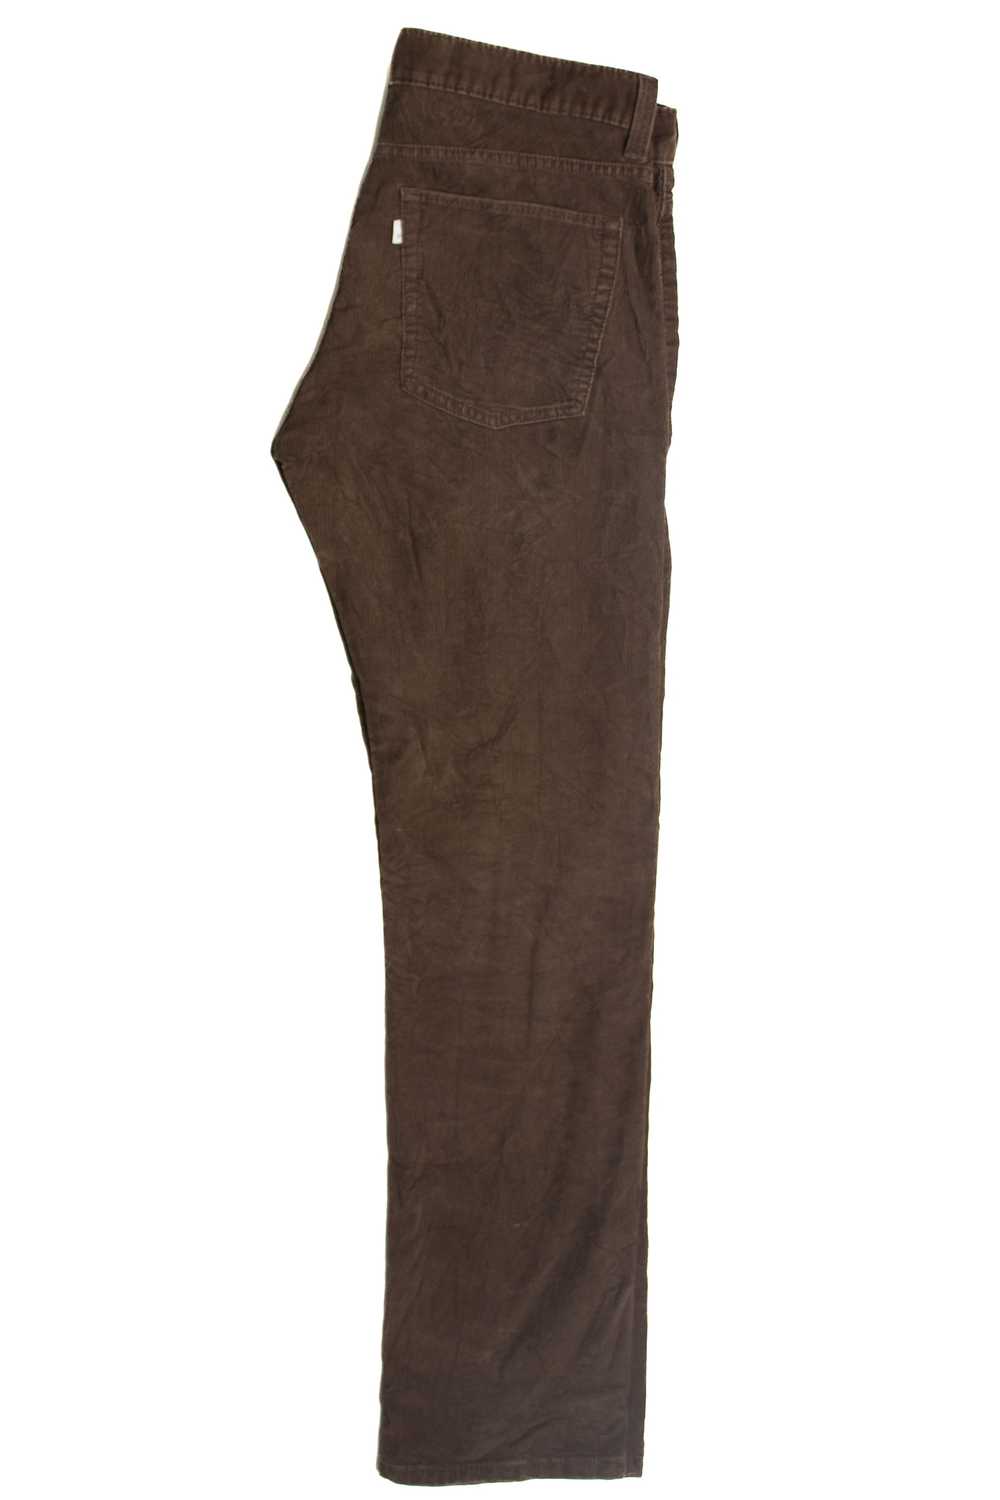 Vintage Levi's Pants (2000s) 451 - image 2